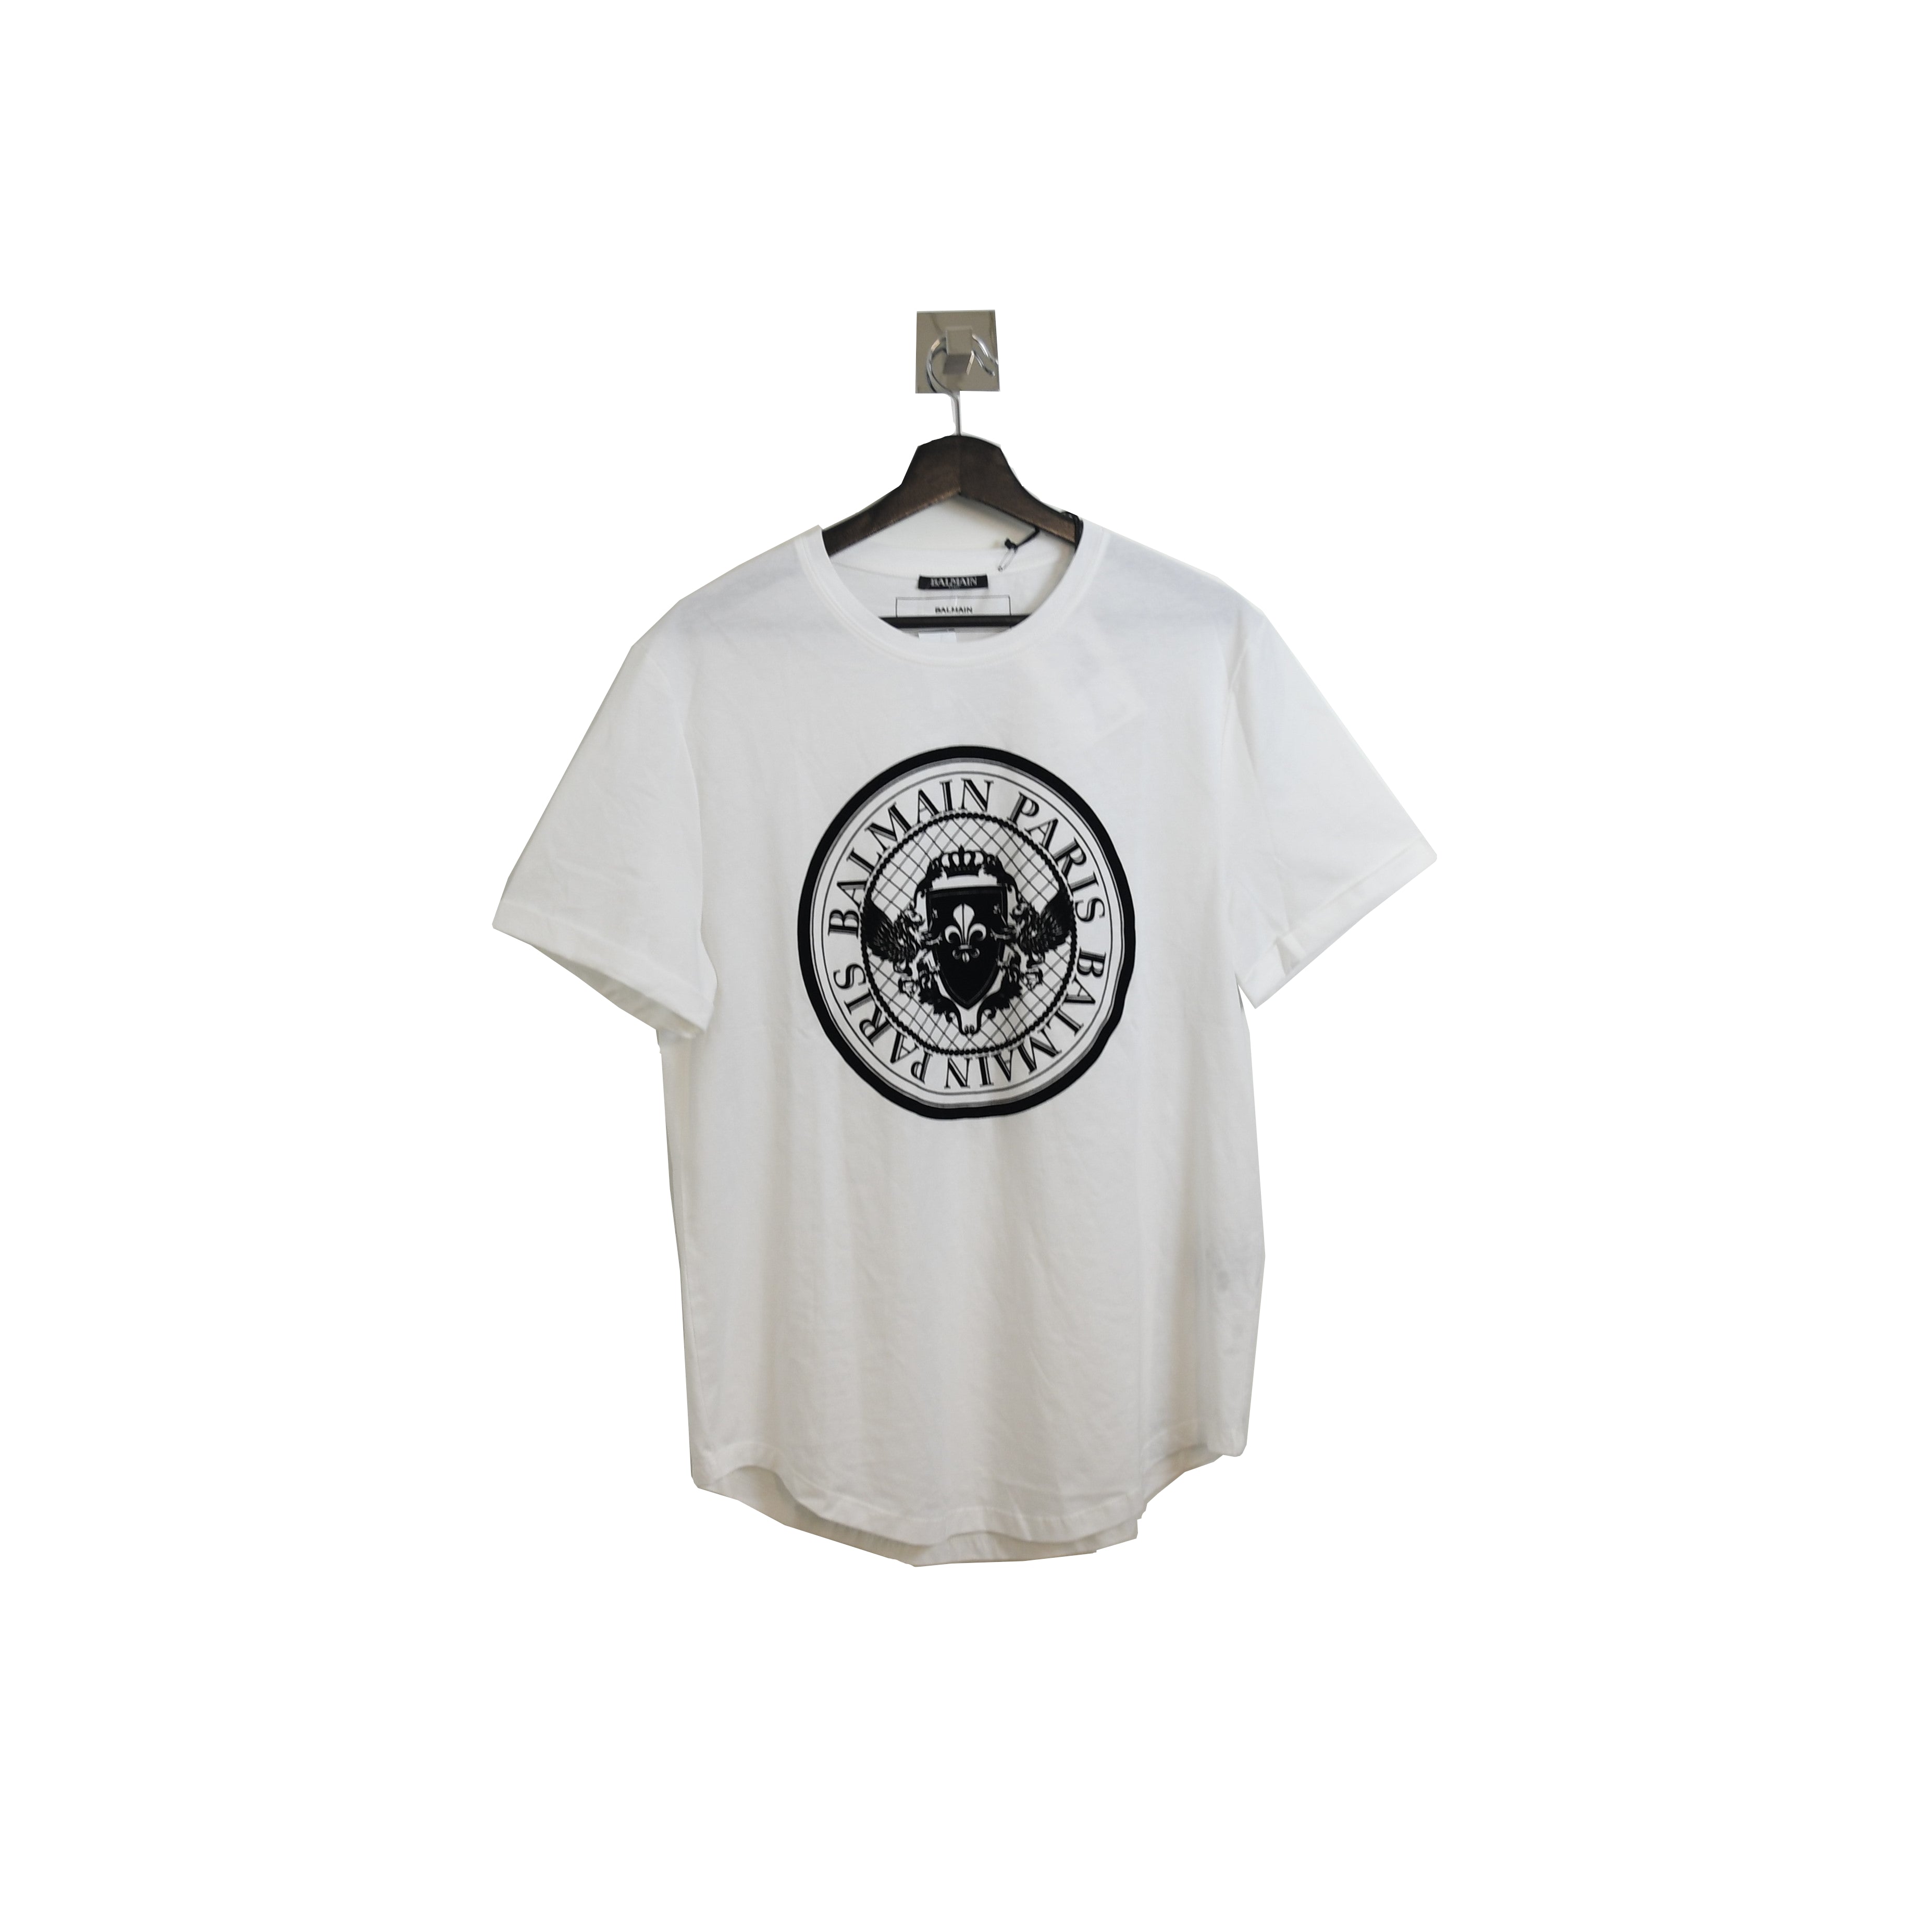 Børnecenter Europa kuffert Balmain Paris Seal T-Shirt White - NOBLEMARS